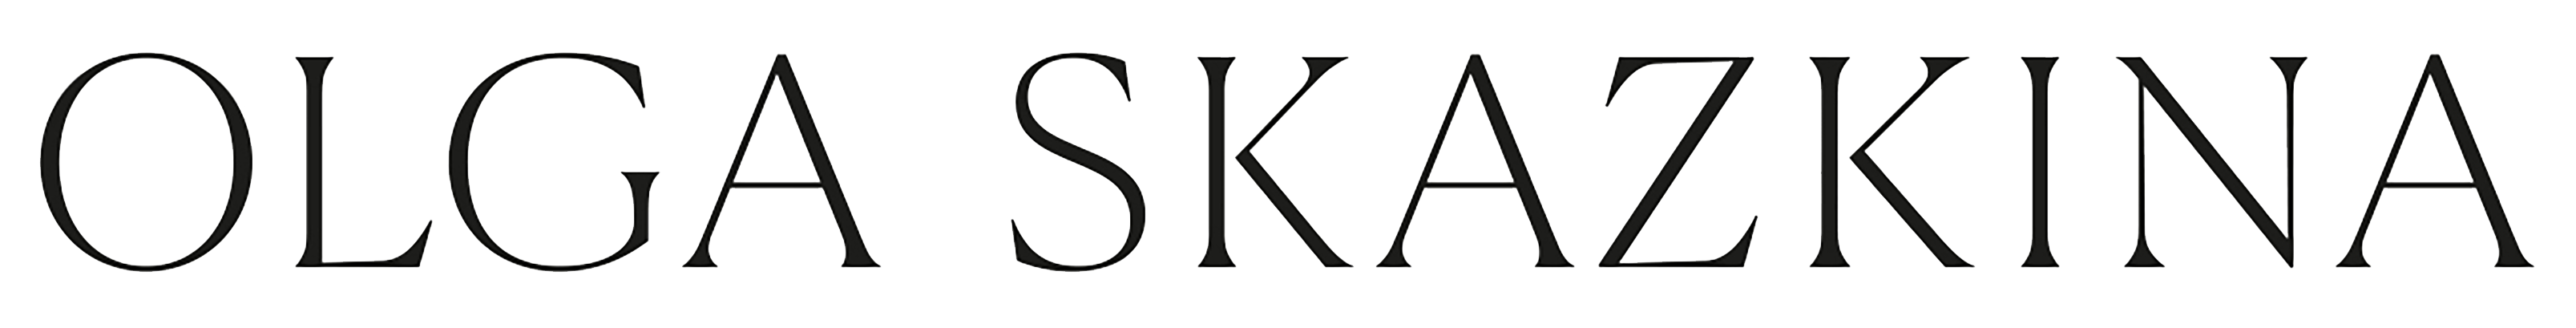 Официальный сайт дизайнера Ольги Сказкиной. Интернет-магазин | Skazkina